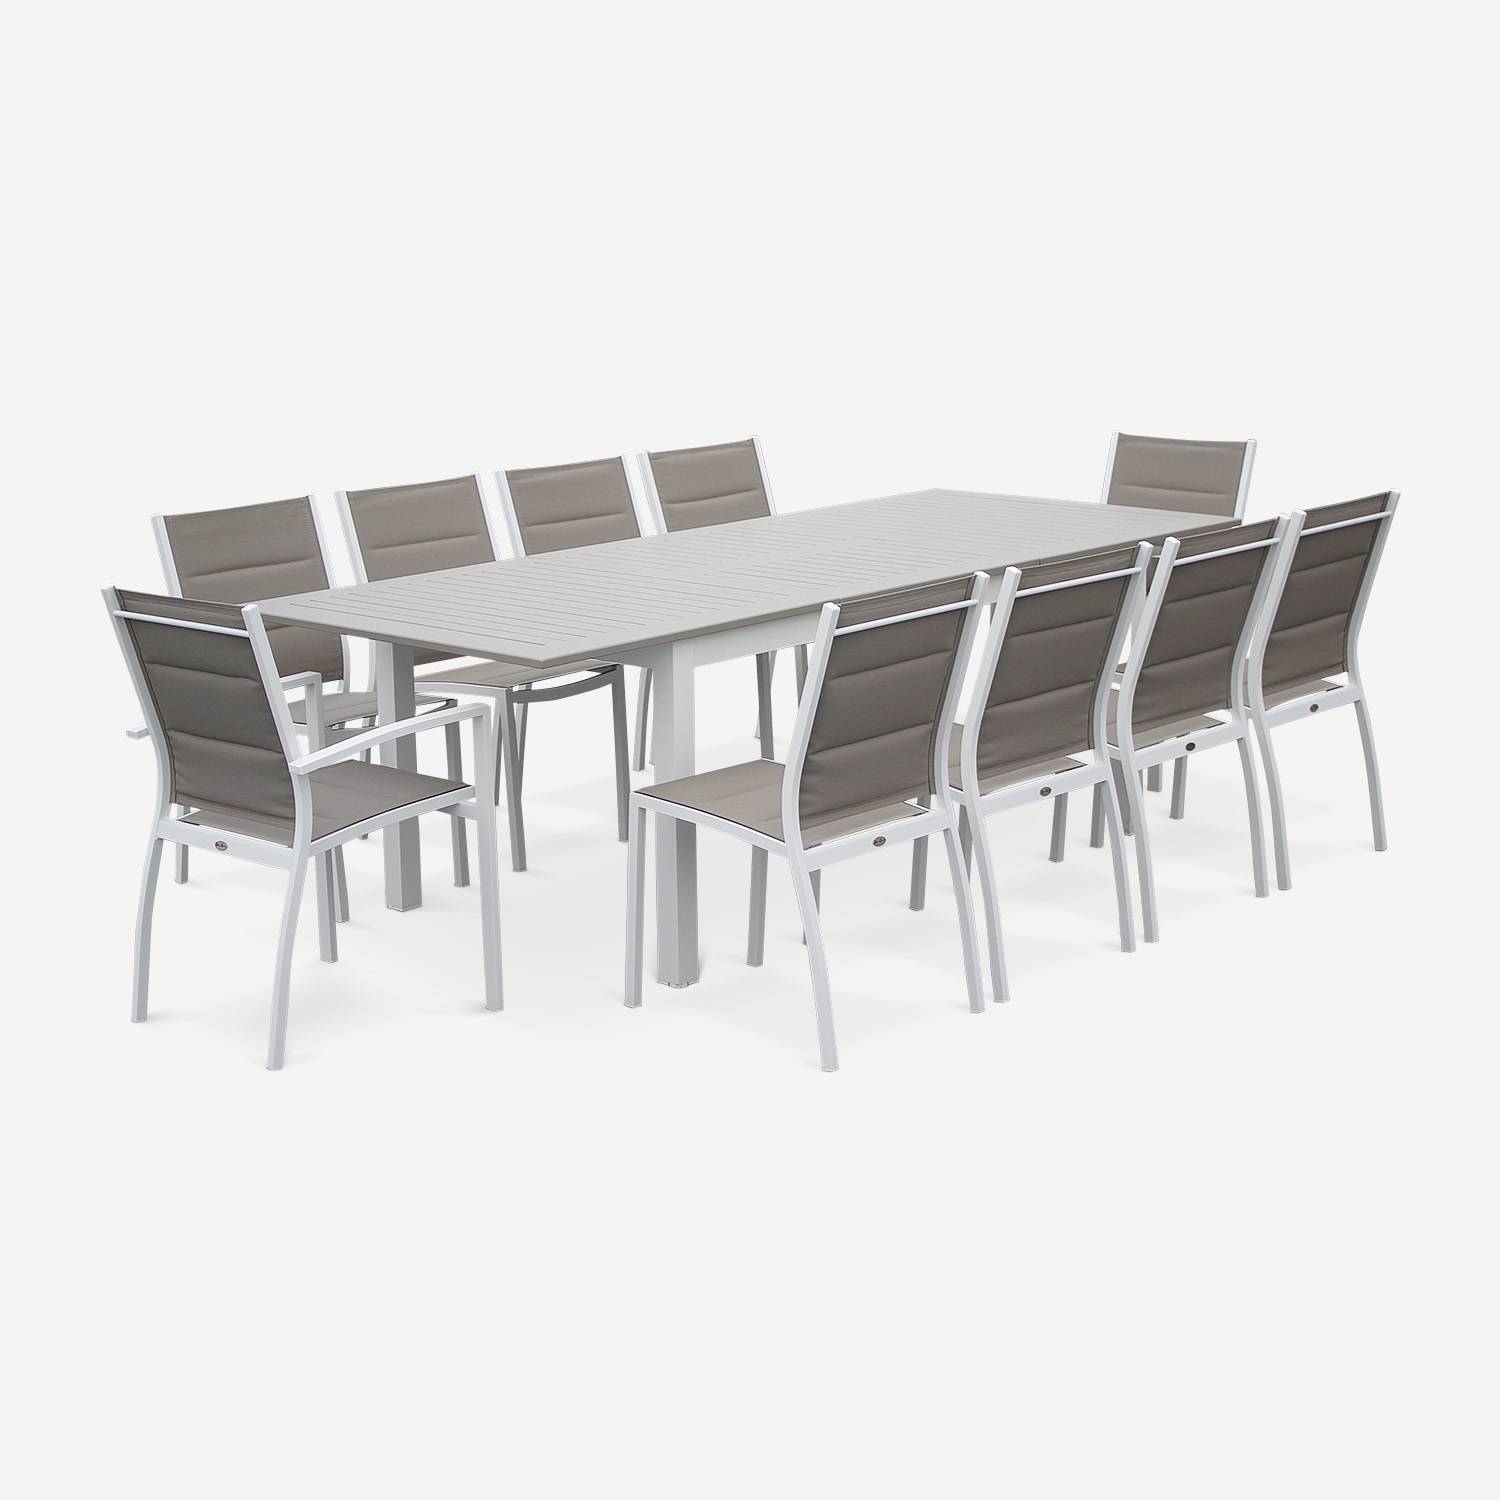 Set mit 2 Chicago-Sesseln - weißes Aluminium und taupefarbenes Textil, stapelbar Photo4